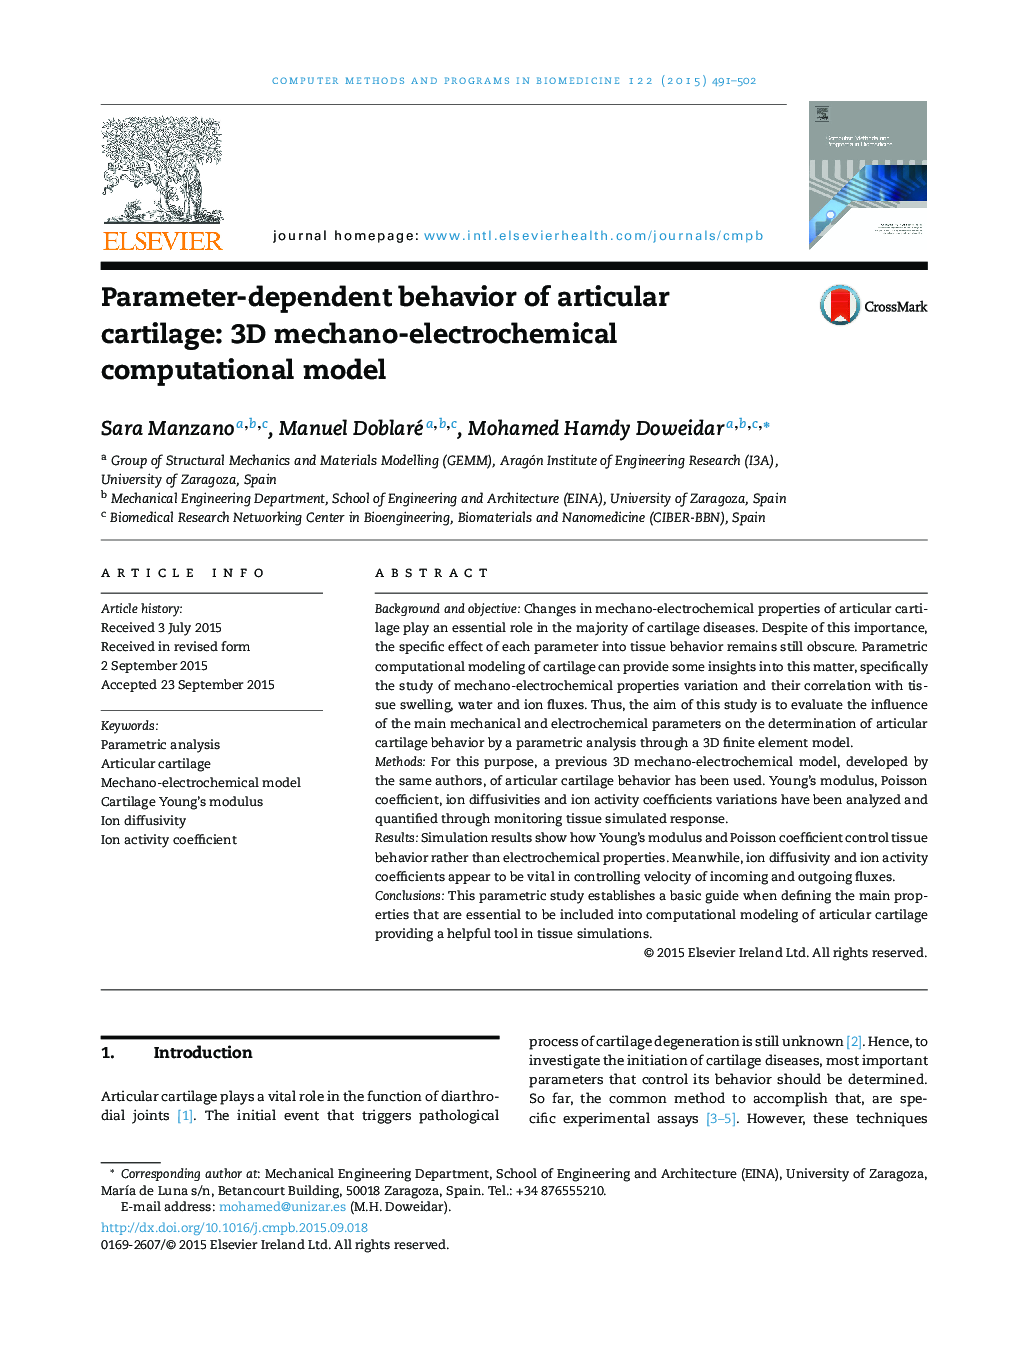 رفتار غضروف مفصلی وابسته به پارامتر: 3D مدل محاسباتی مکانیک ـ الکتروشیمیایی سه بعدی